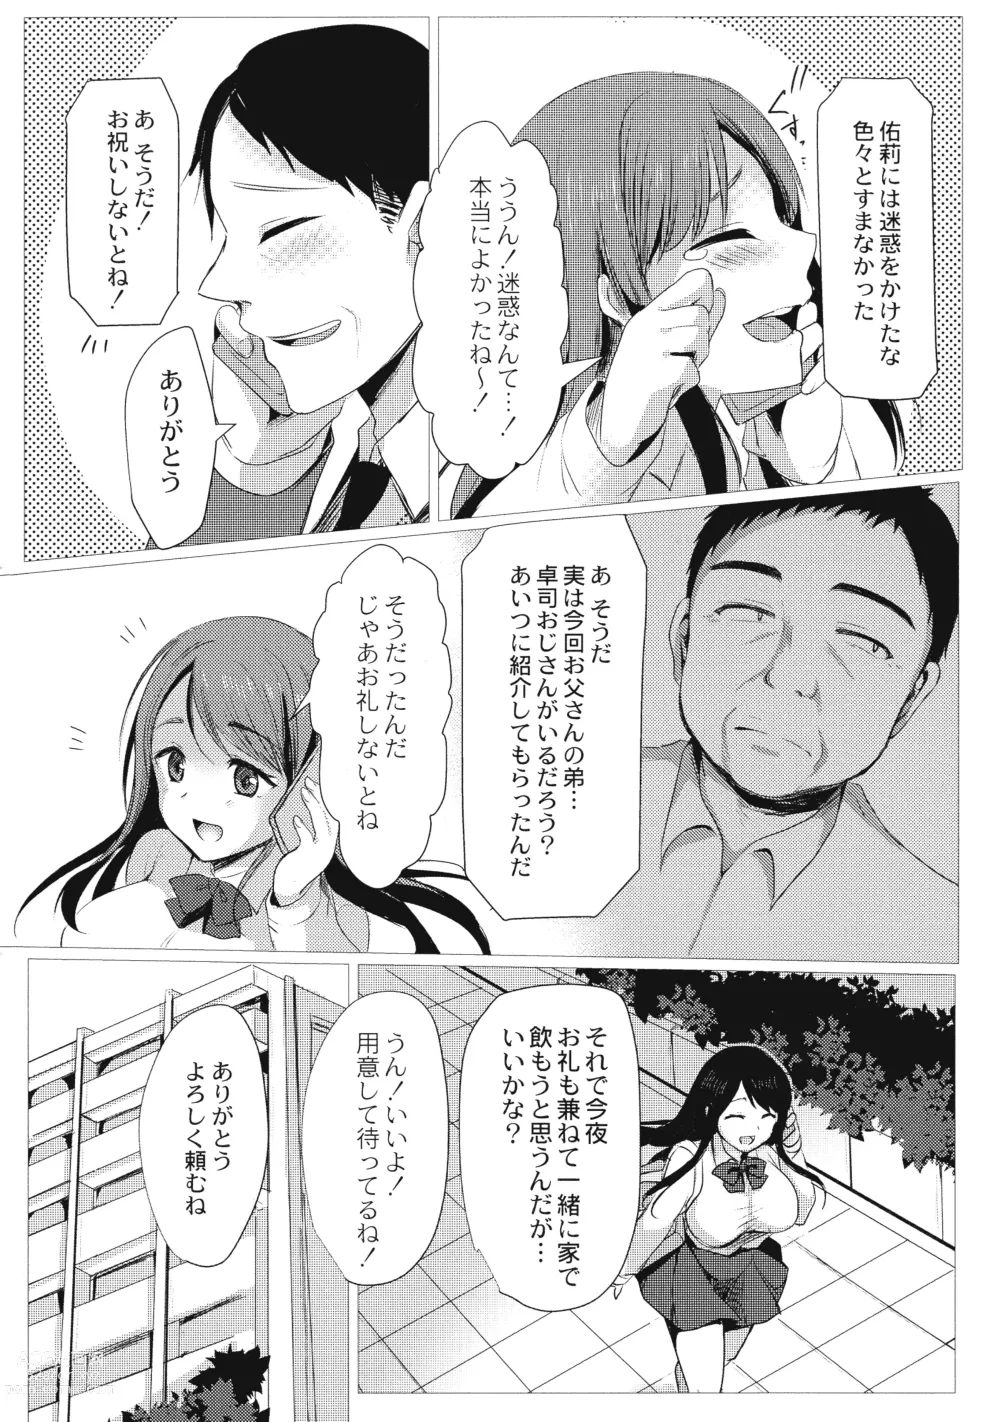 Page 6 of manga Mesuochi.